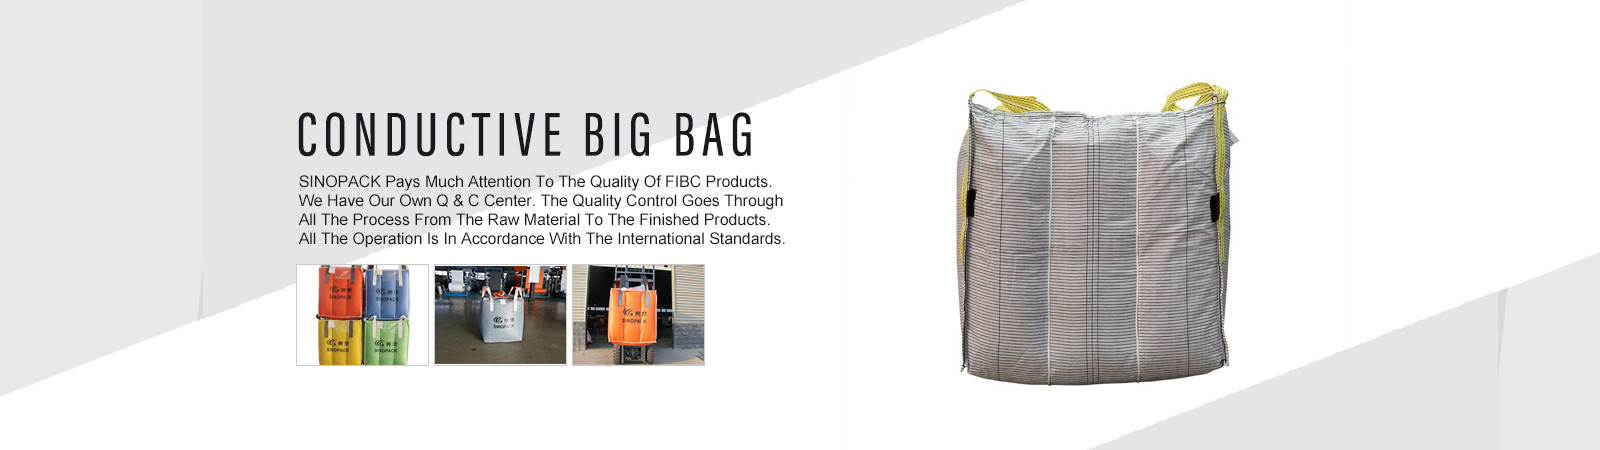 ποιότητας Big Bag FIBC εργοστάσιο